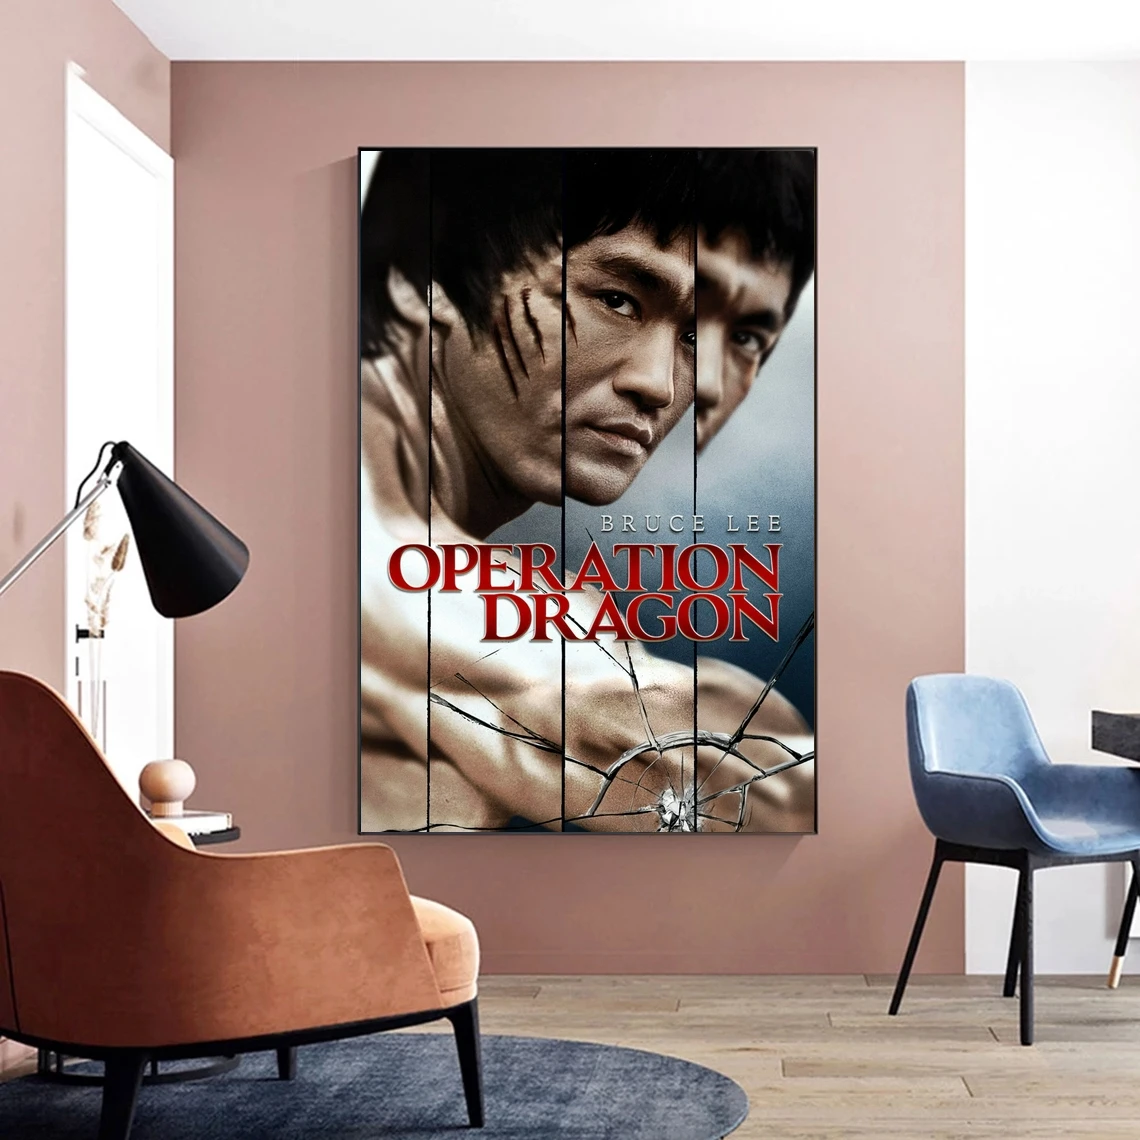 

Постер из фильма «Войдите в фильм дракона», классический популярный постер на холсте, настенная живопись, украшение для дома (без рамки)